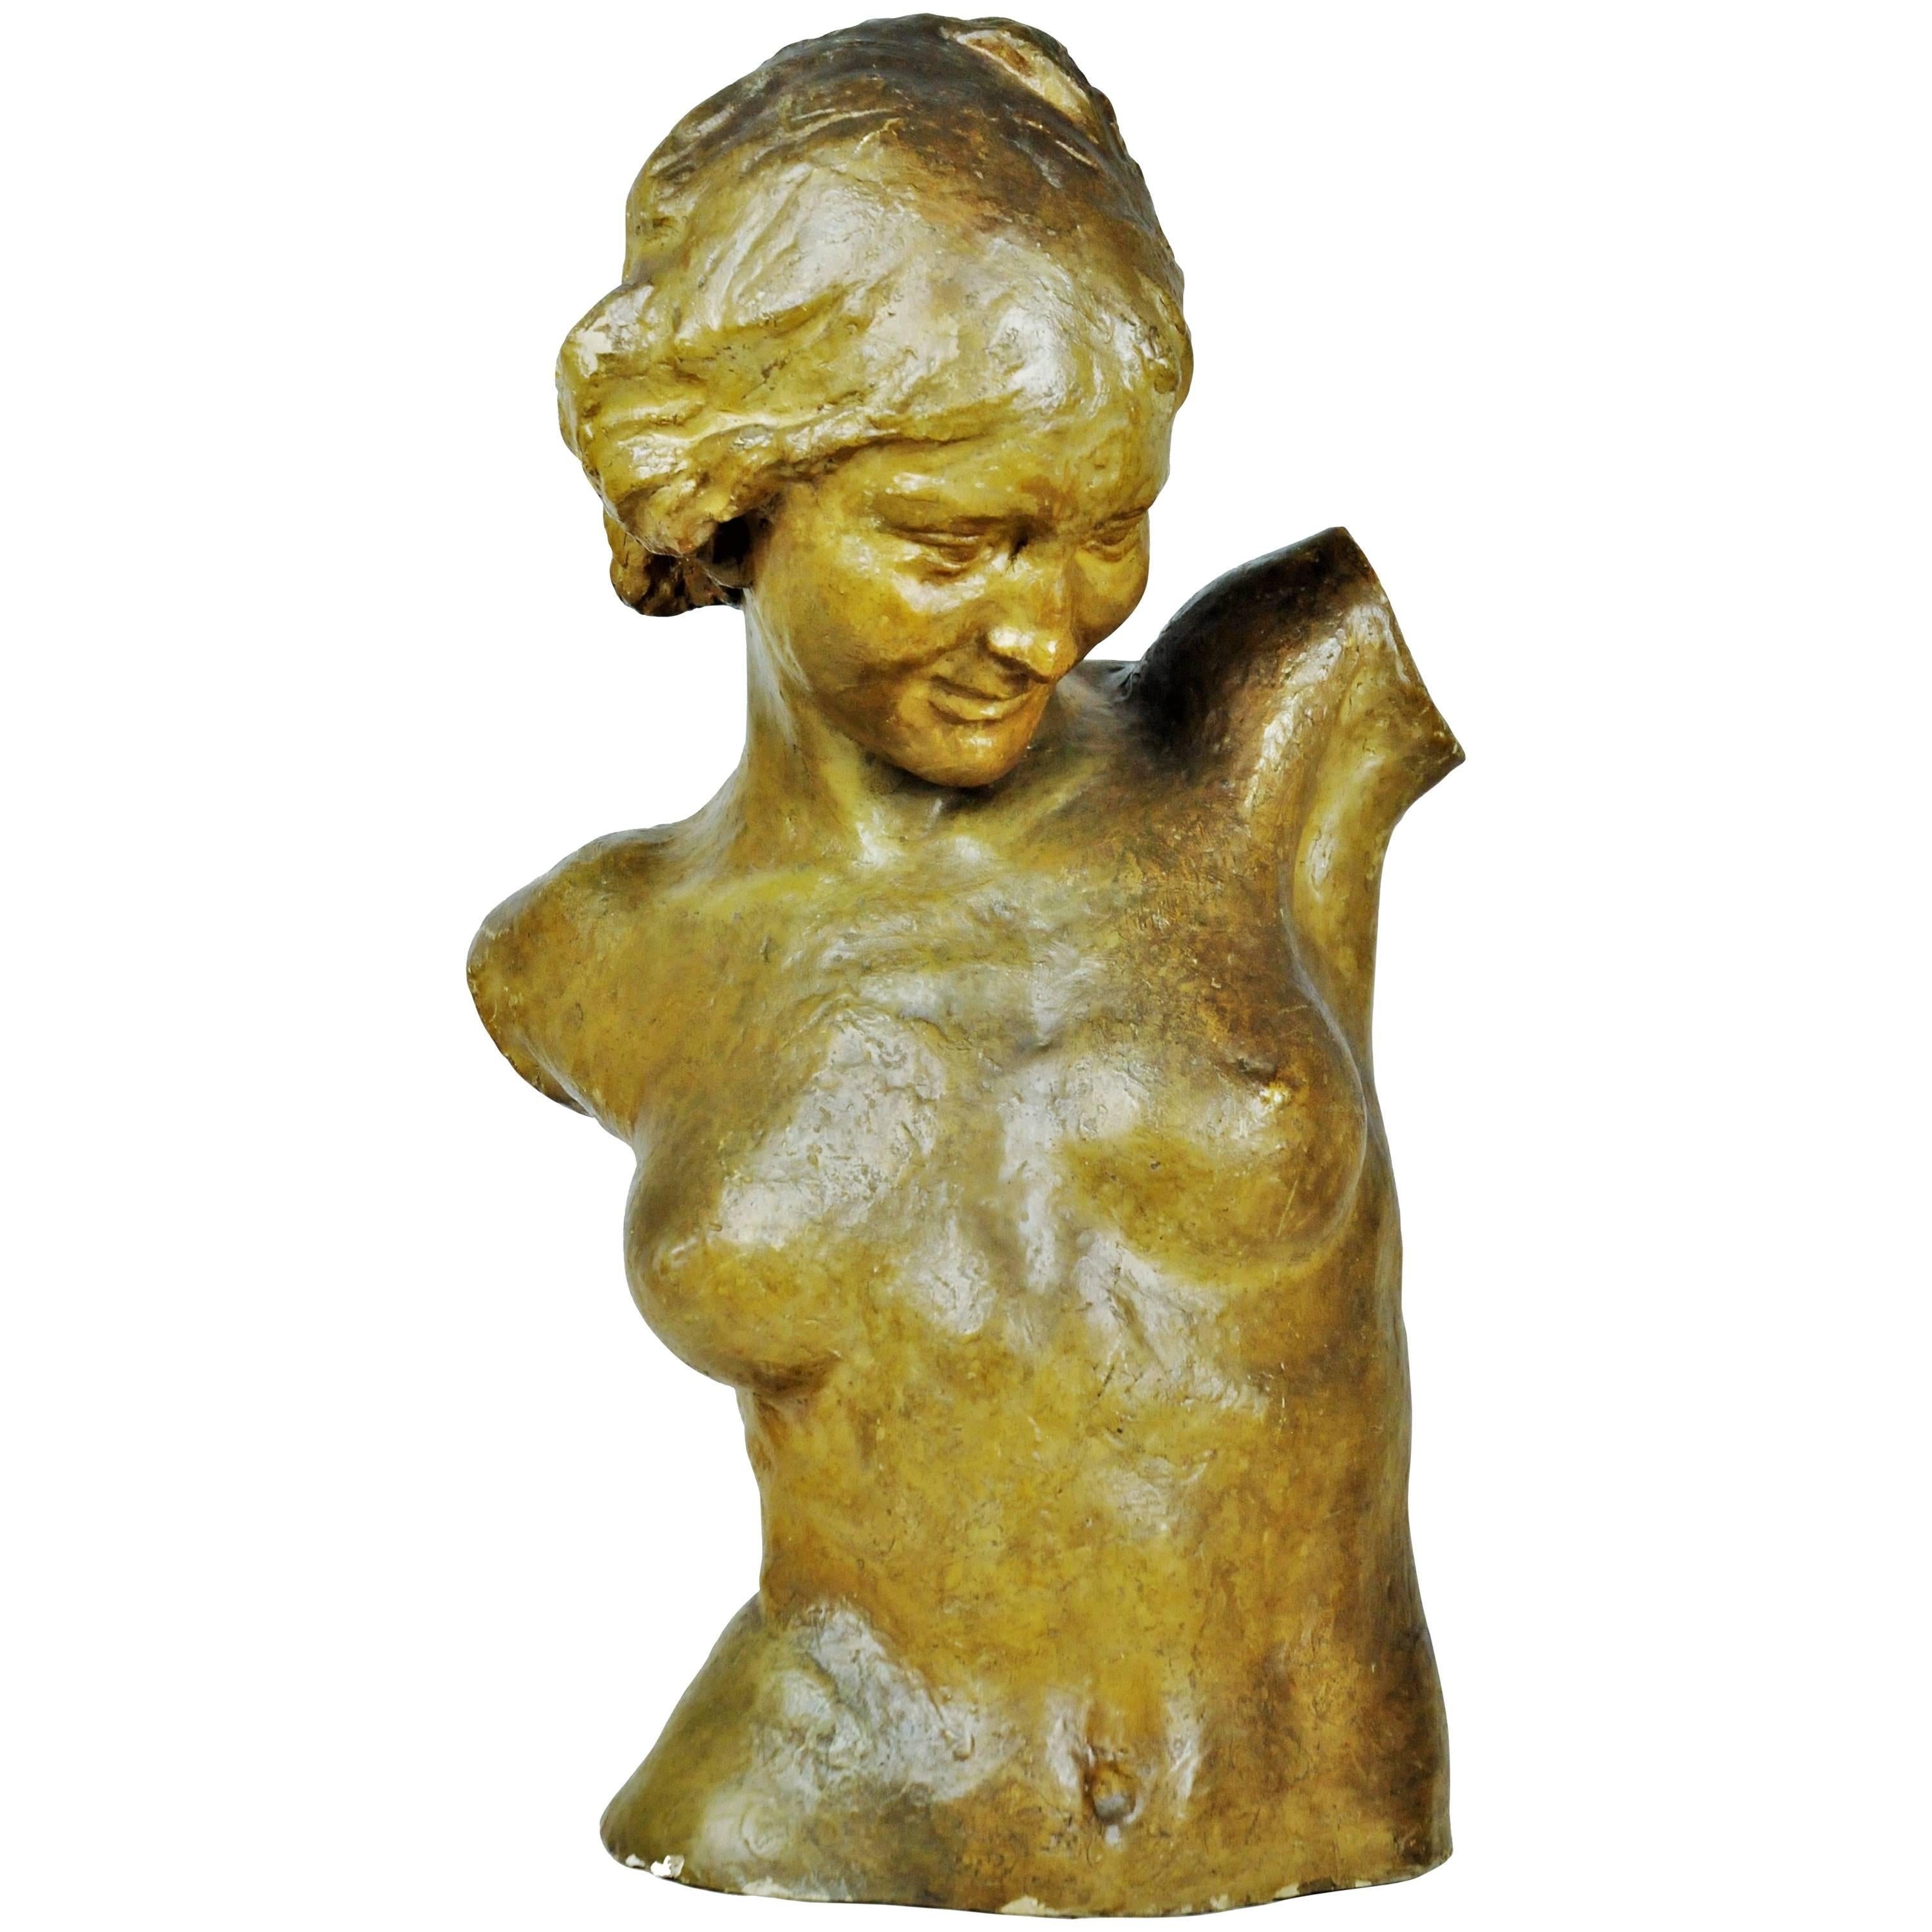 Flemish Art Nouveau, Female Torso, Terracotta Sculpture, 1900s